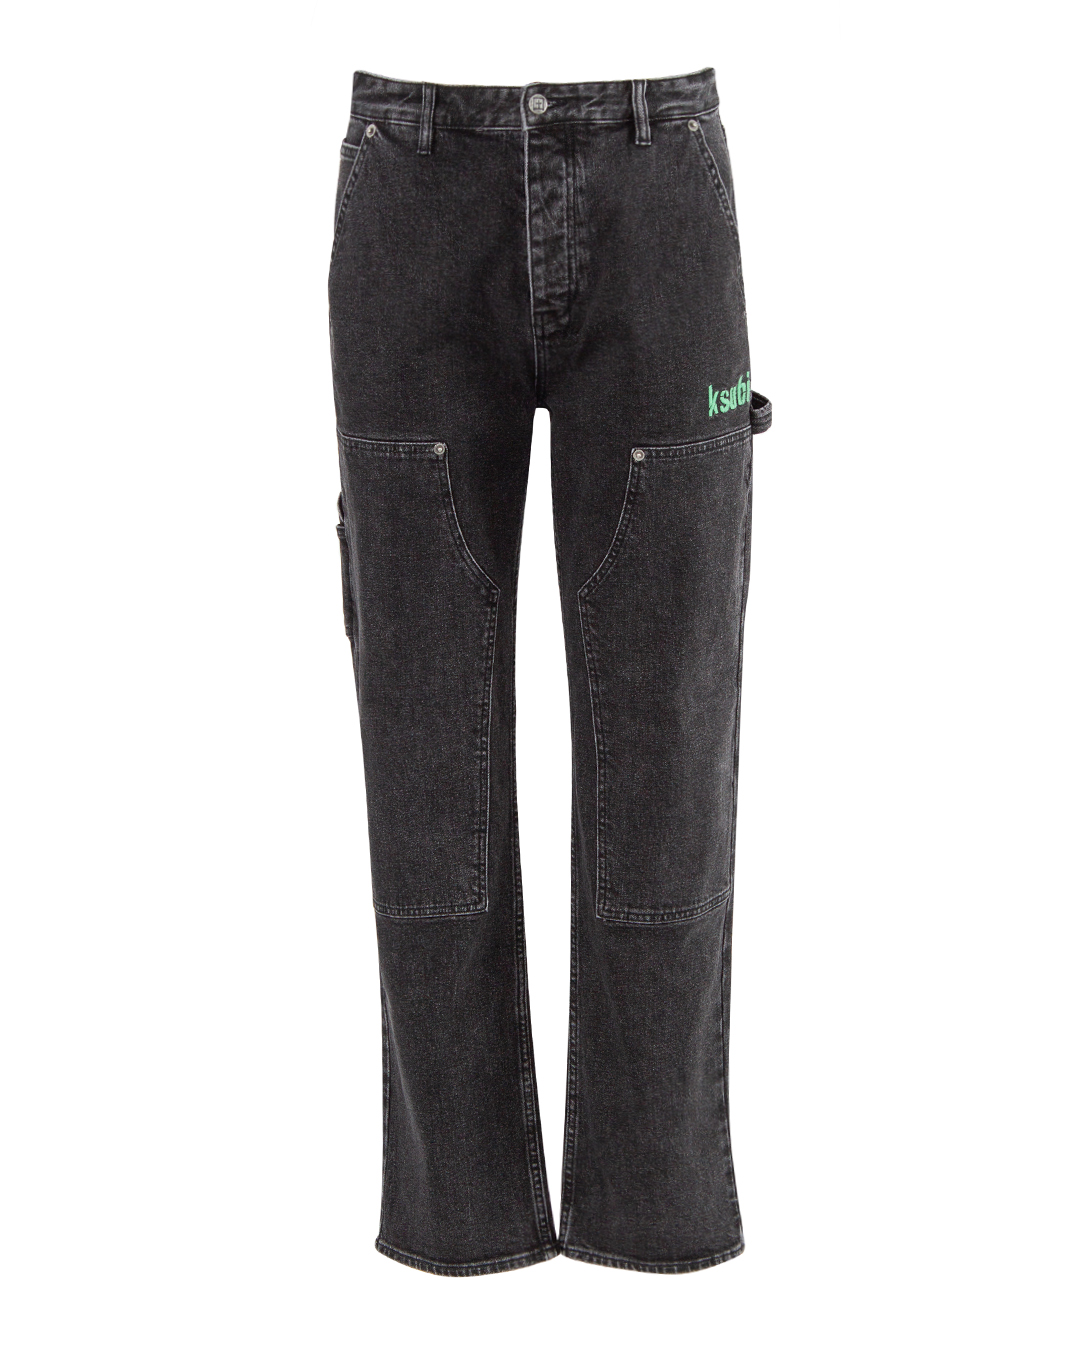 джинсы KSUBI 2 MFA23PA007 черный 30, размер 30 - фото 1